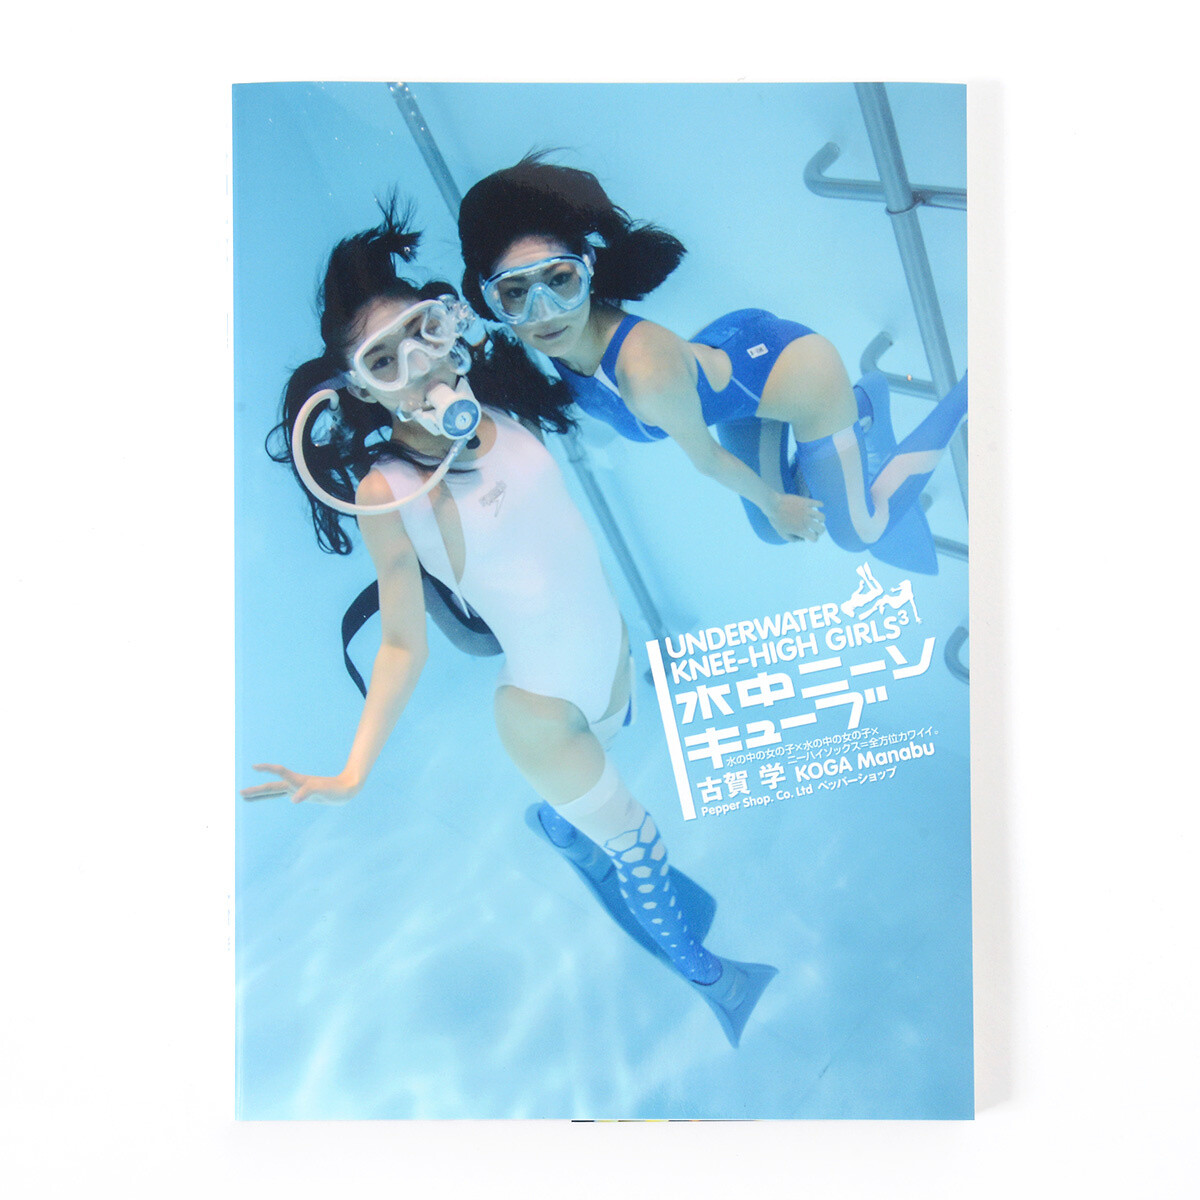 Underwater Knee High Girls 3 Tokyo Otaku Mode